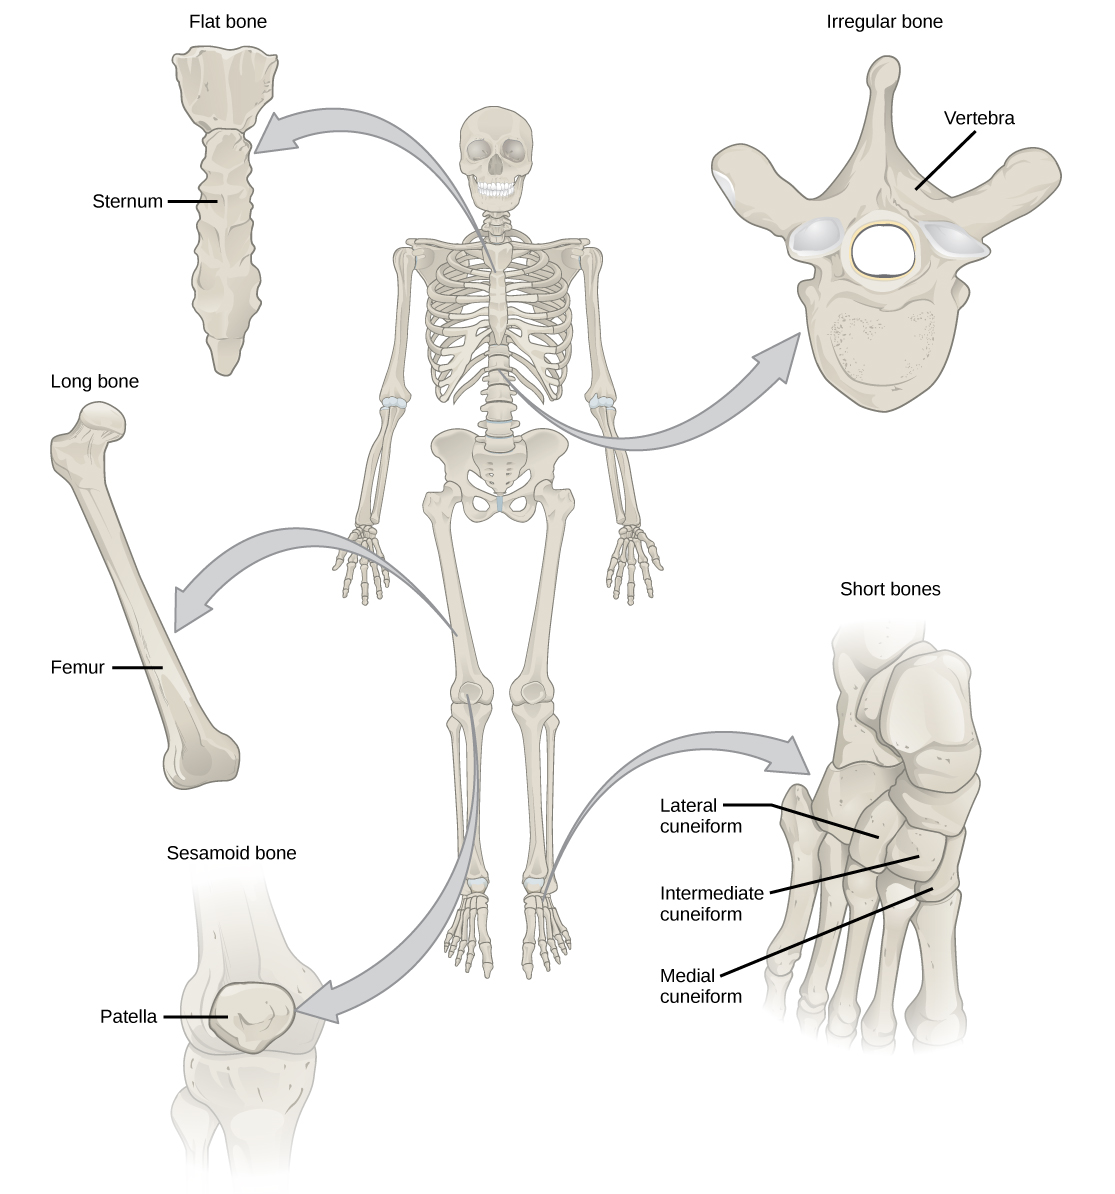 L'illustration montre la classification des différents types d'os. Le sternum situé à l'avant et au milieu de la cage thoracique est un os plat. Le fémur est un os long. La rotule est un os sésamoïde. Les vertèbres sont des os irréguliers et les os du pied sont des os courts.